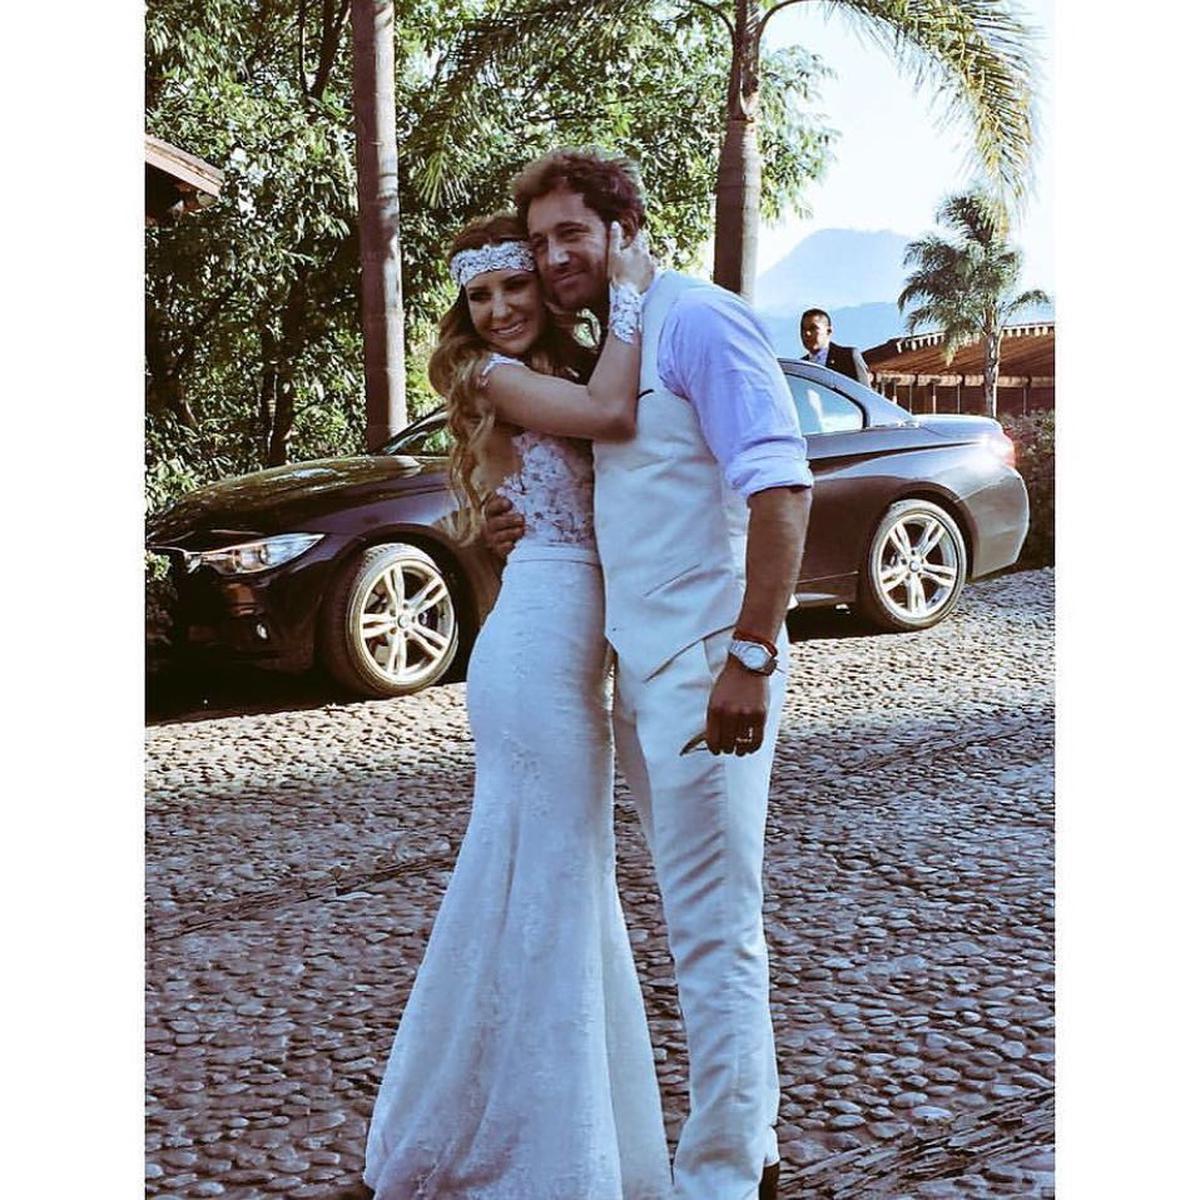  | Geraldine Bazán y Gabriel Soto se casaron en 2016, se separaron en 2017 y en 2018 firmaron el divorcio.